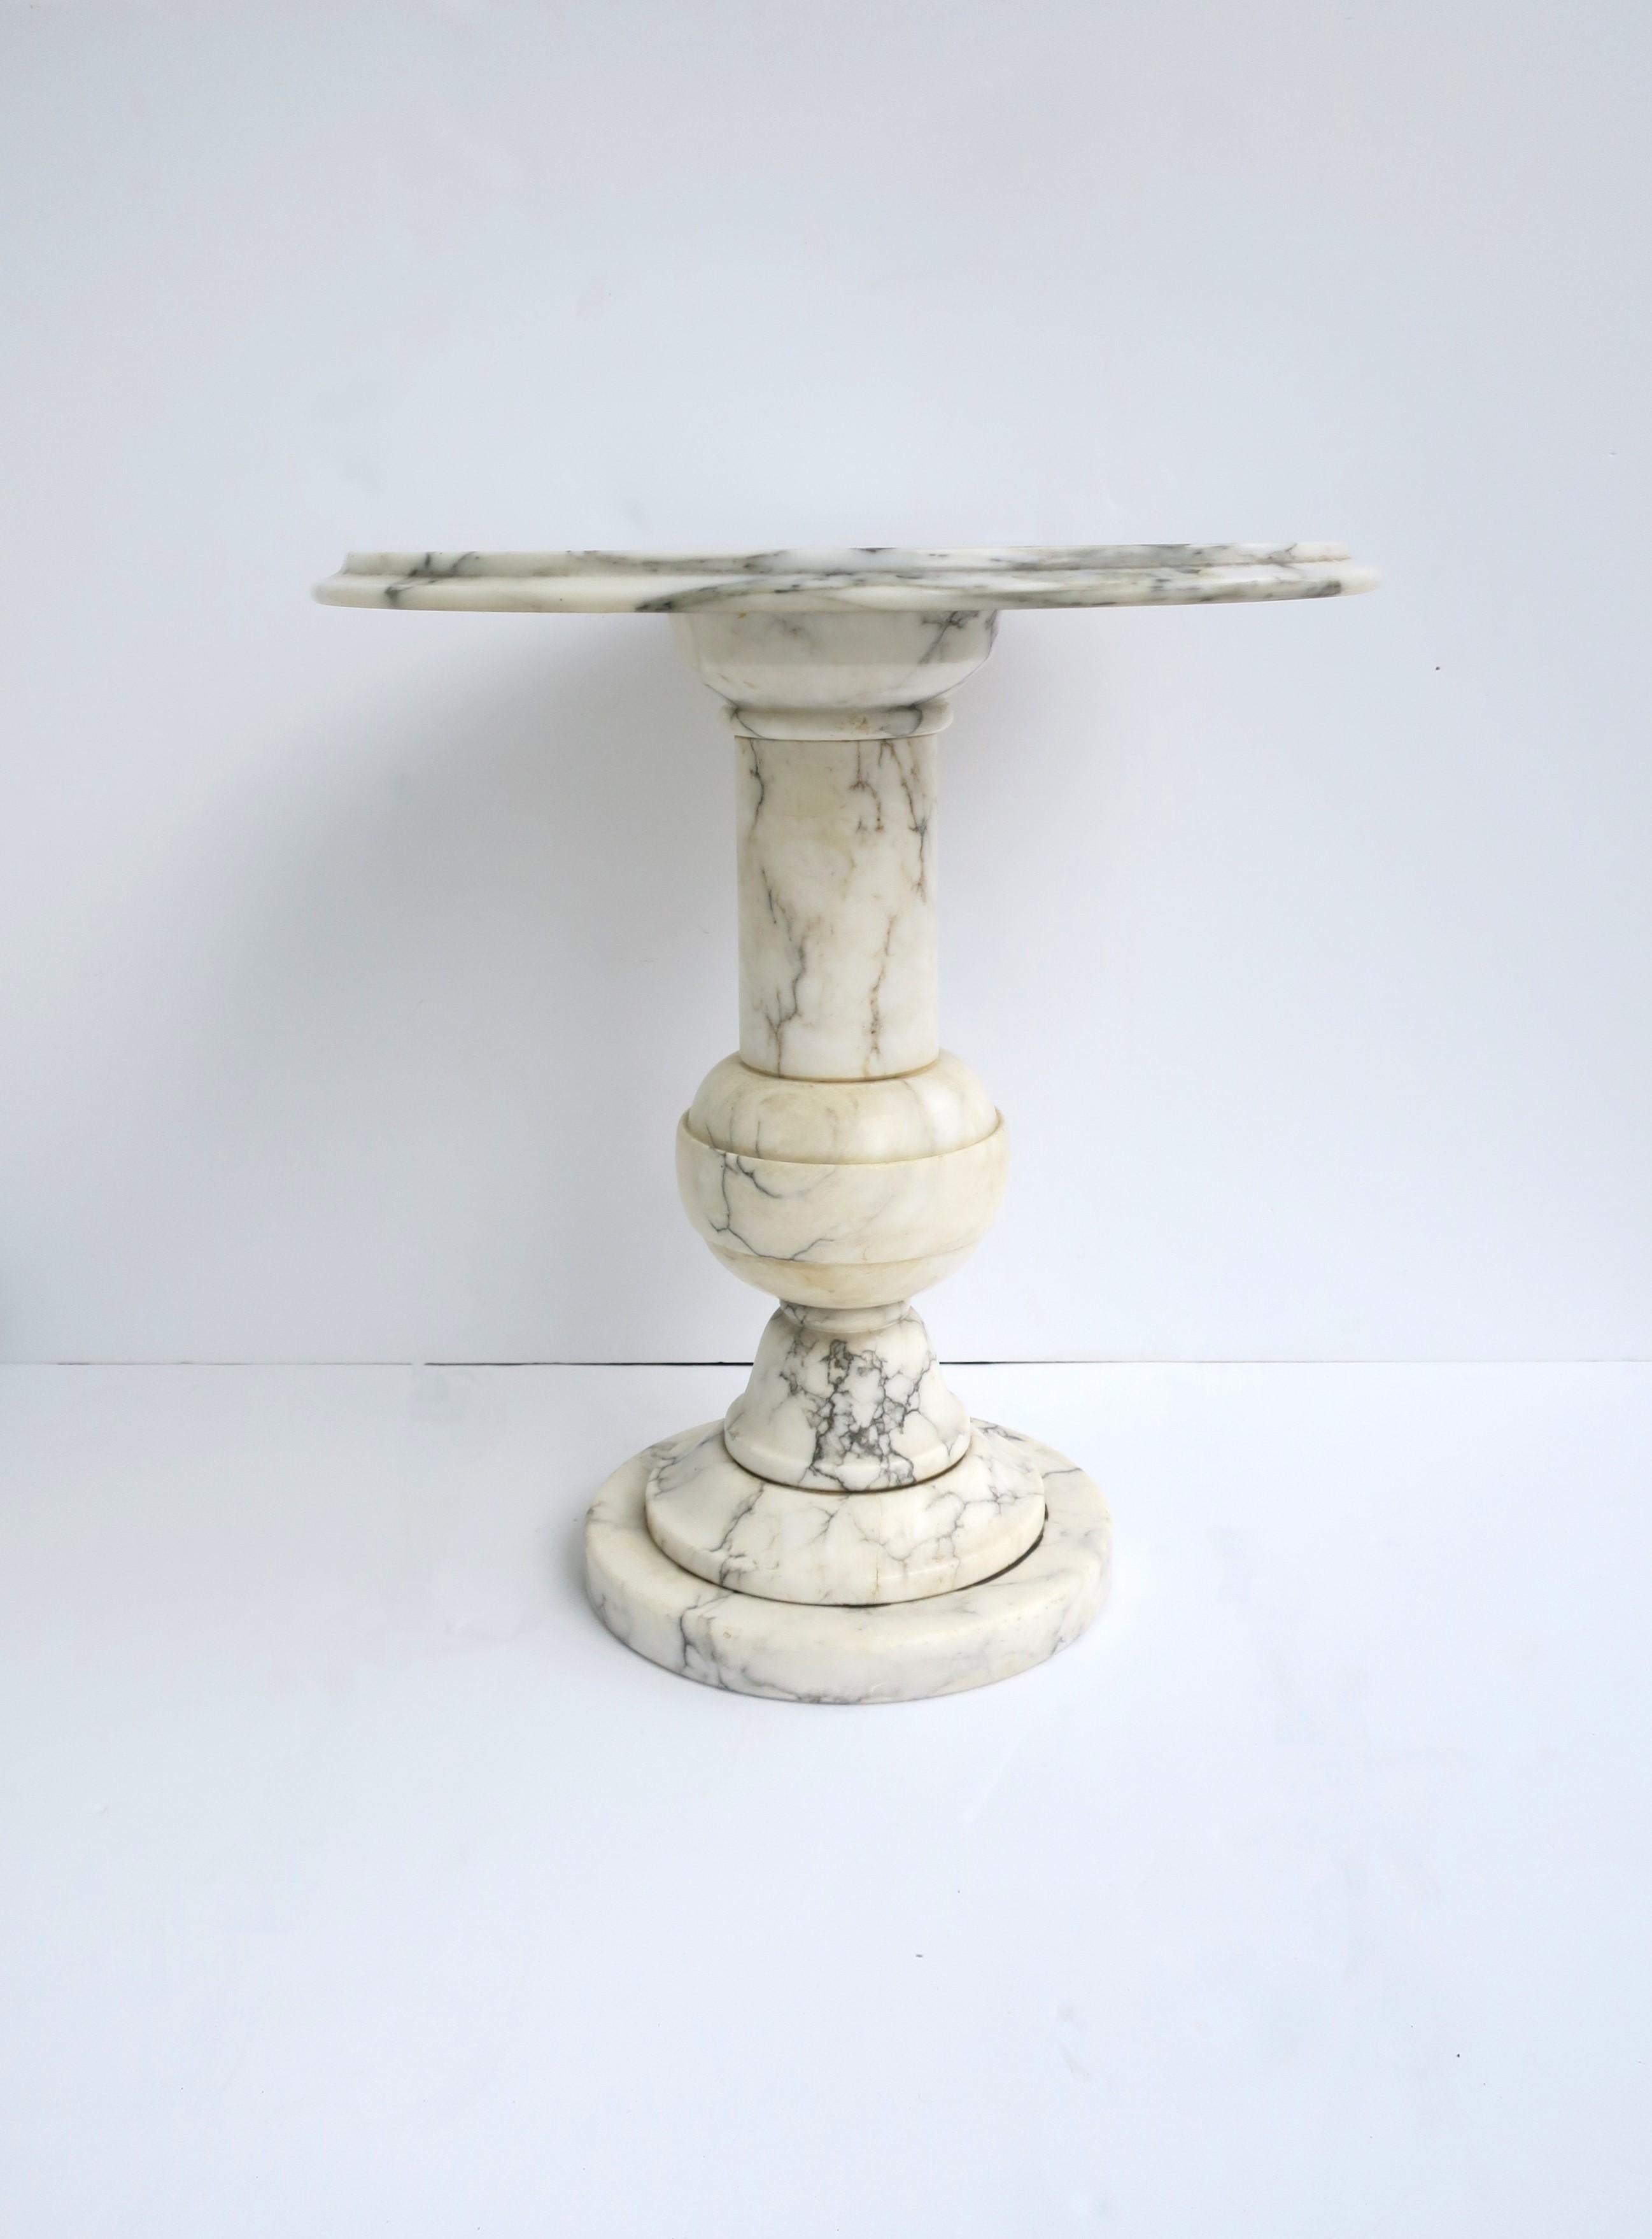 Tavolino rotondo in marmo, circa metà del XX secolo, Italia. Il marmo è prevalentemente bianco con venature nere e grigie. È un tavolo ideale per bere, bere cocktail, ecc. Dimensioni: 18